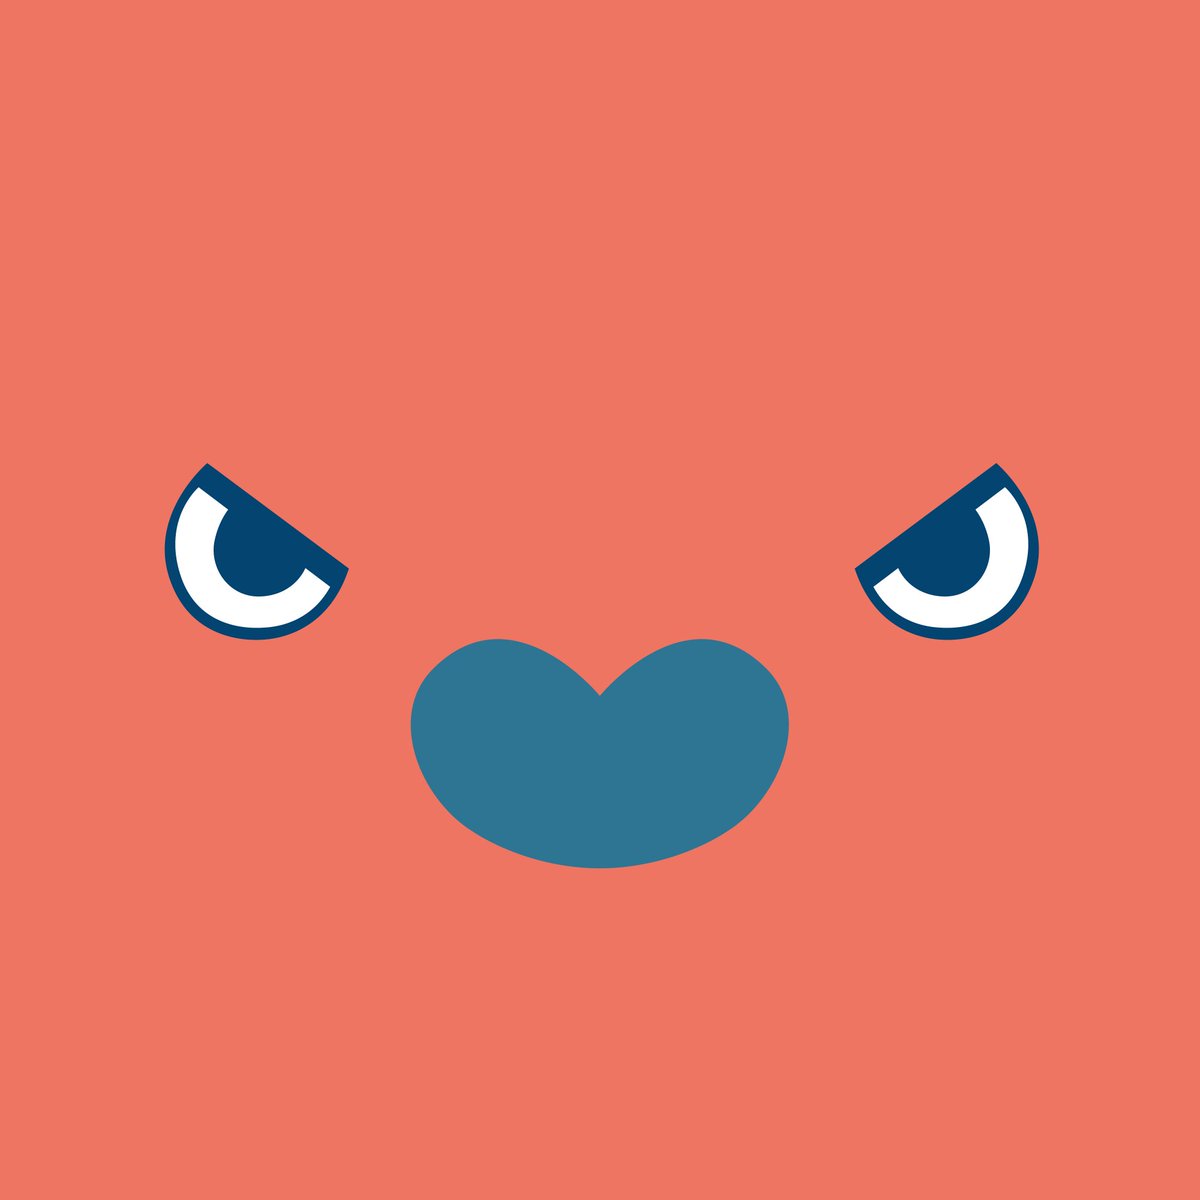 アンベビ Angry Babyz בטוויטר アンベビの顔のかわいいアイコンができました 今日はミック バフ ミッシー ベッキーの アイコンをプレゼント あと６匹のアイコンはまた次回の更新で アイコン フリーアイコン